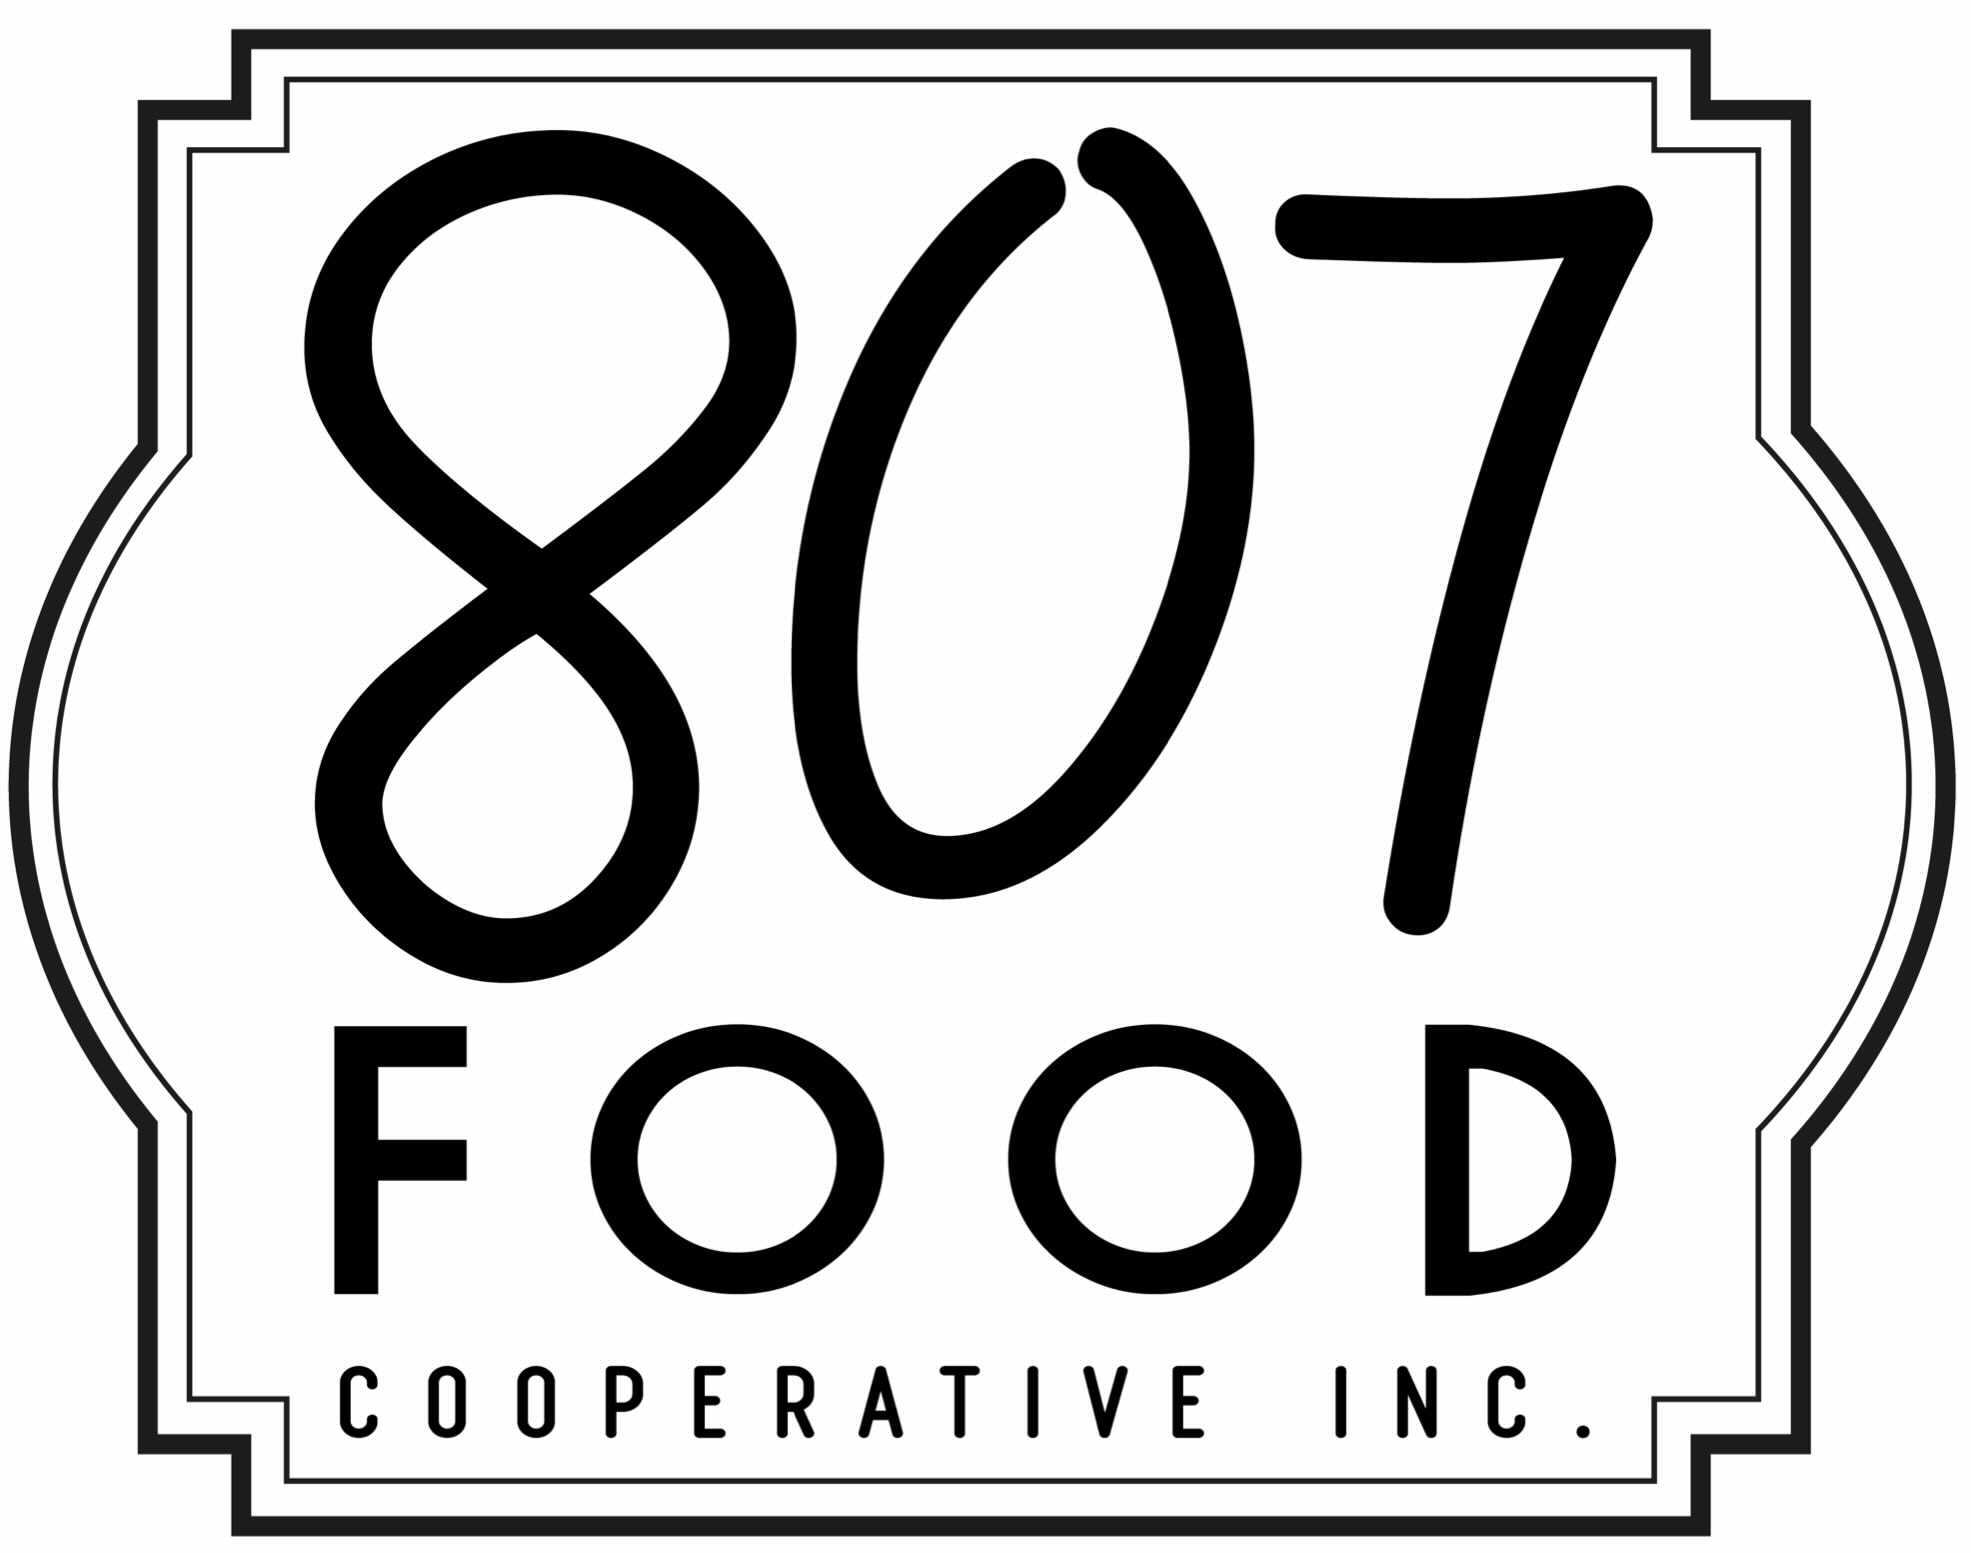 549-807-food-coop-inc-logo.jpg